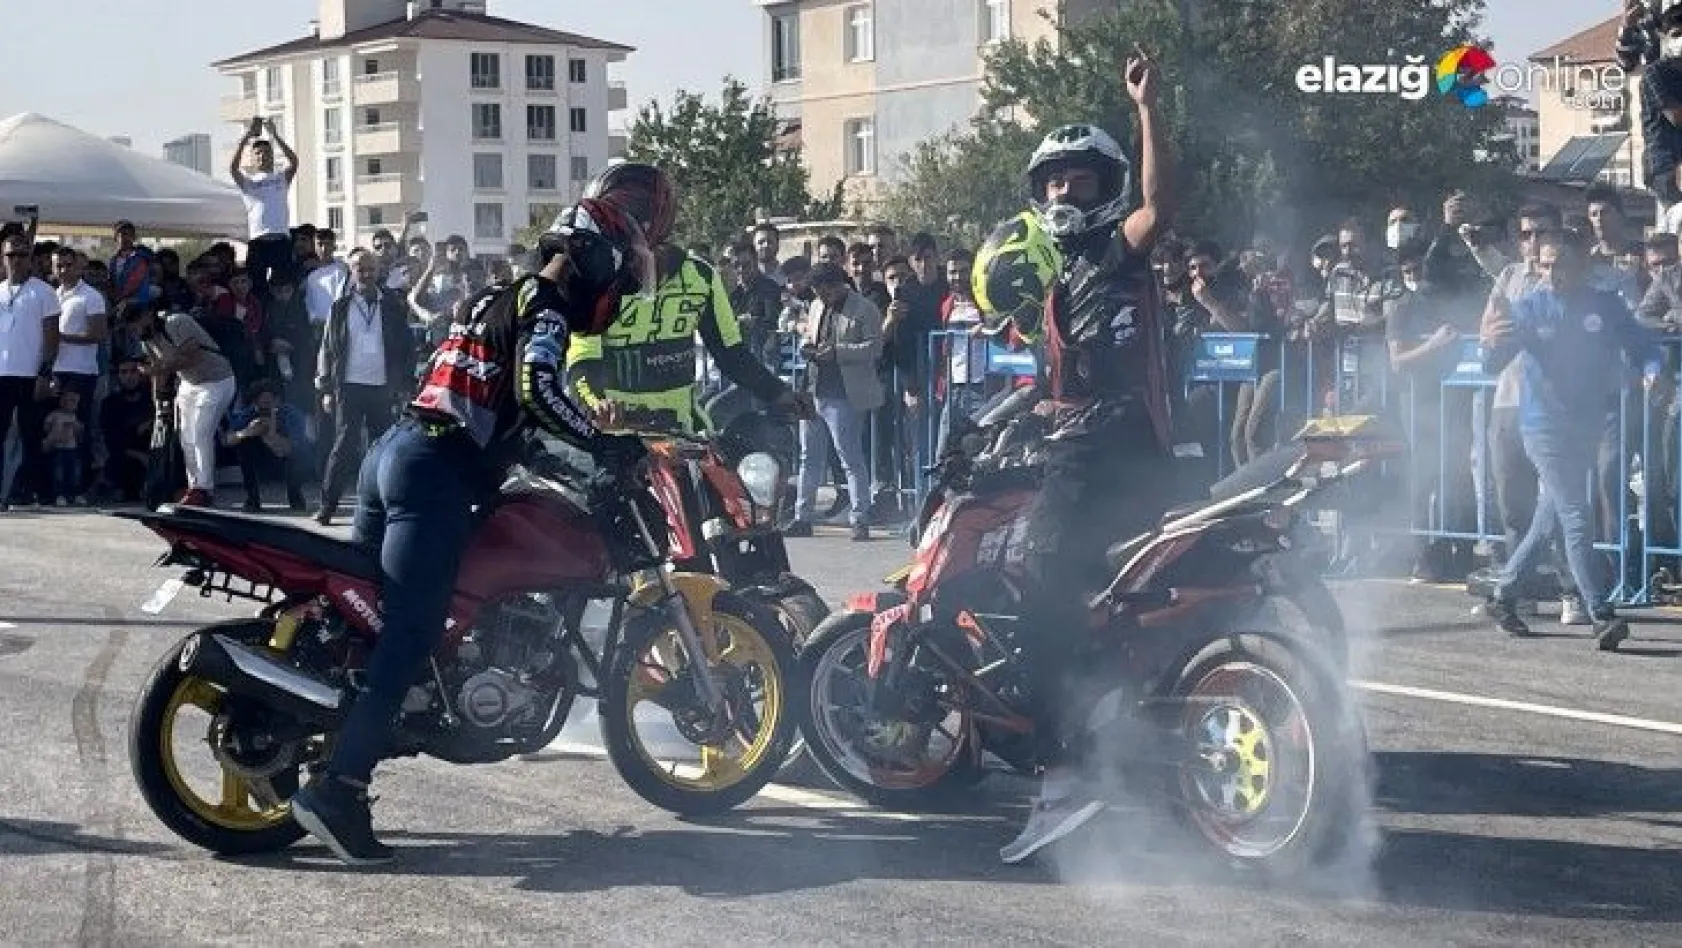 Elazığ'da Modifiyeli Araç ve Motosiklet Festivali düzenlendi